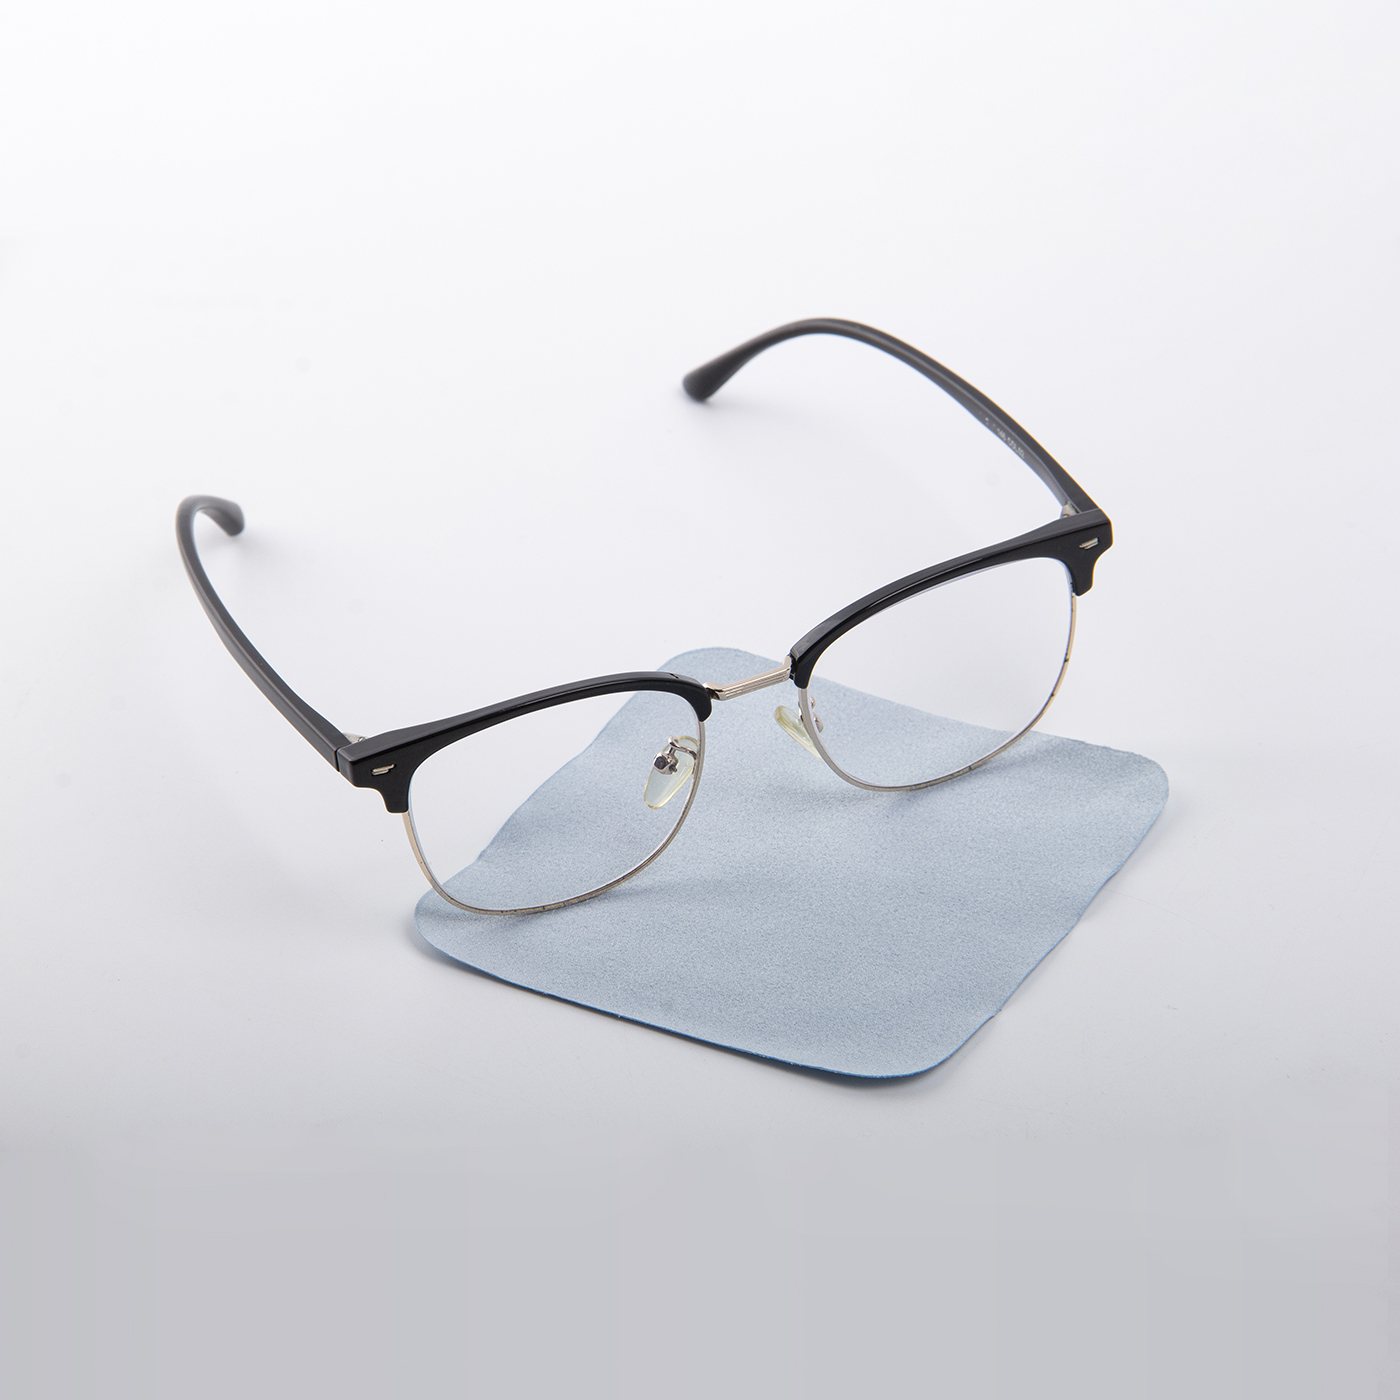 10 x 10 cm Microfiber Eyeglasses Wipe3